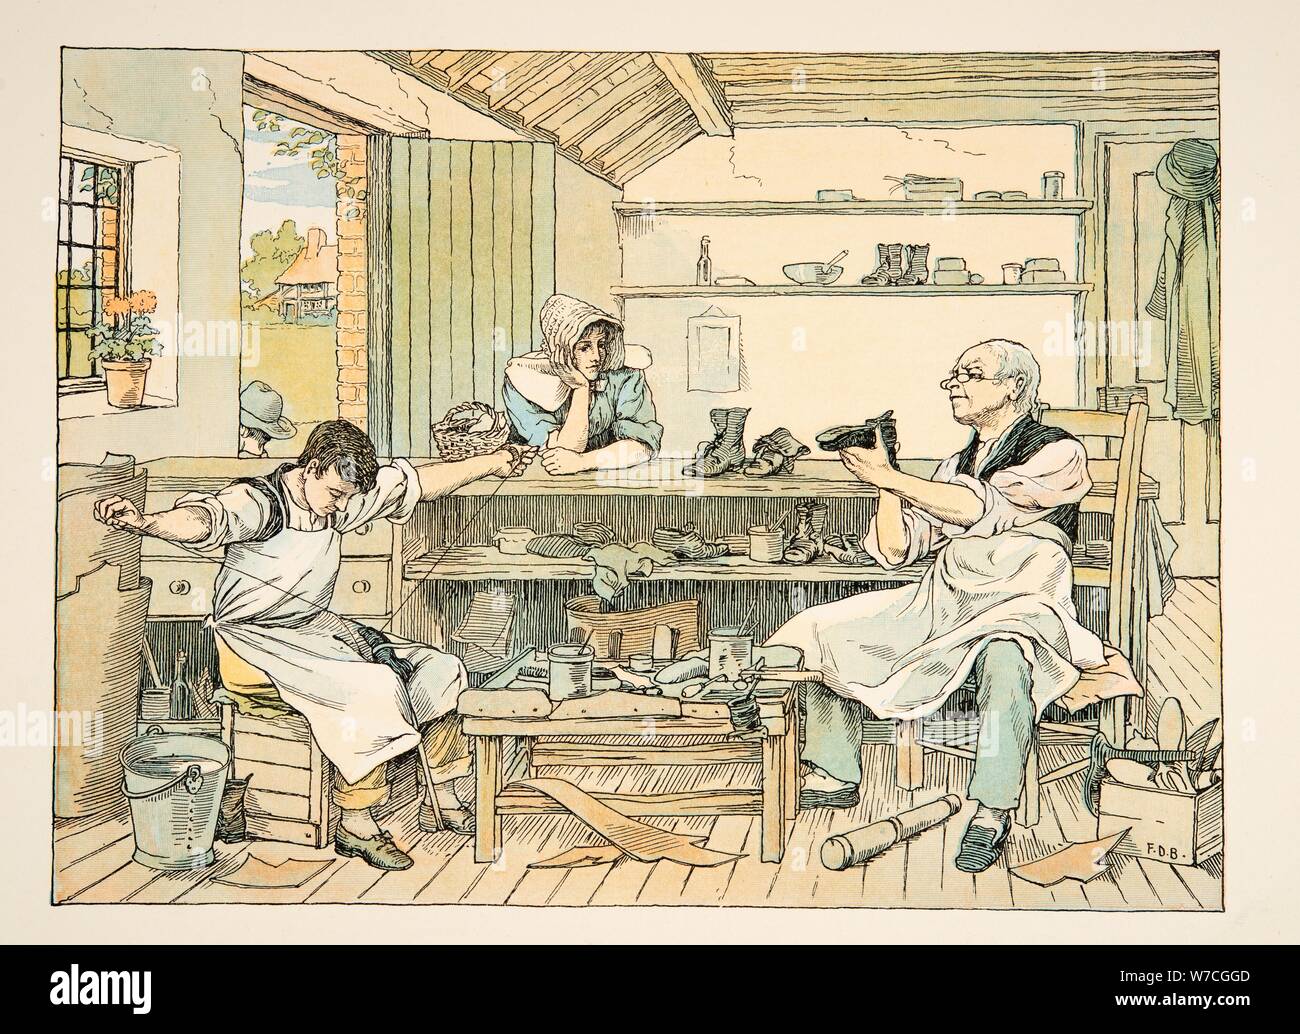 El zapatero, de cuatro y veinte trabajadores, pub. Litografía de color (1900) Foto de stock